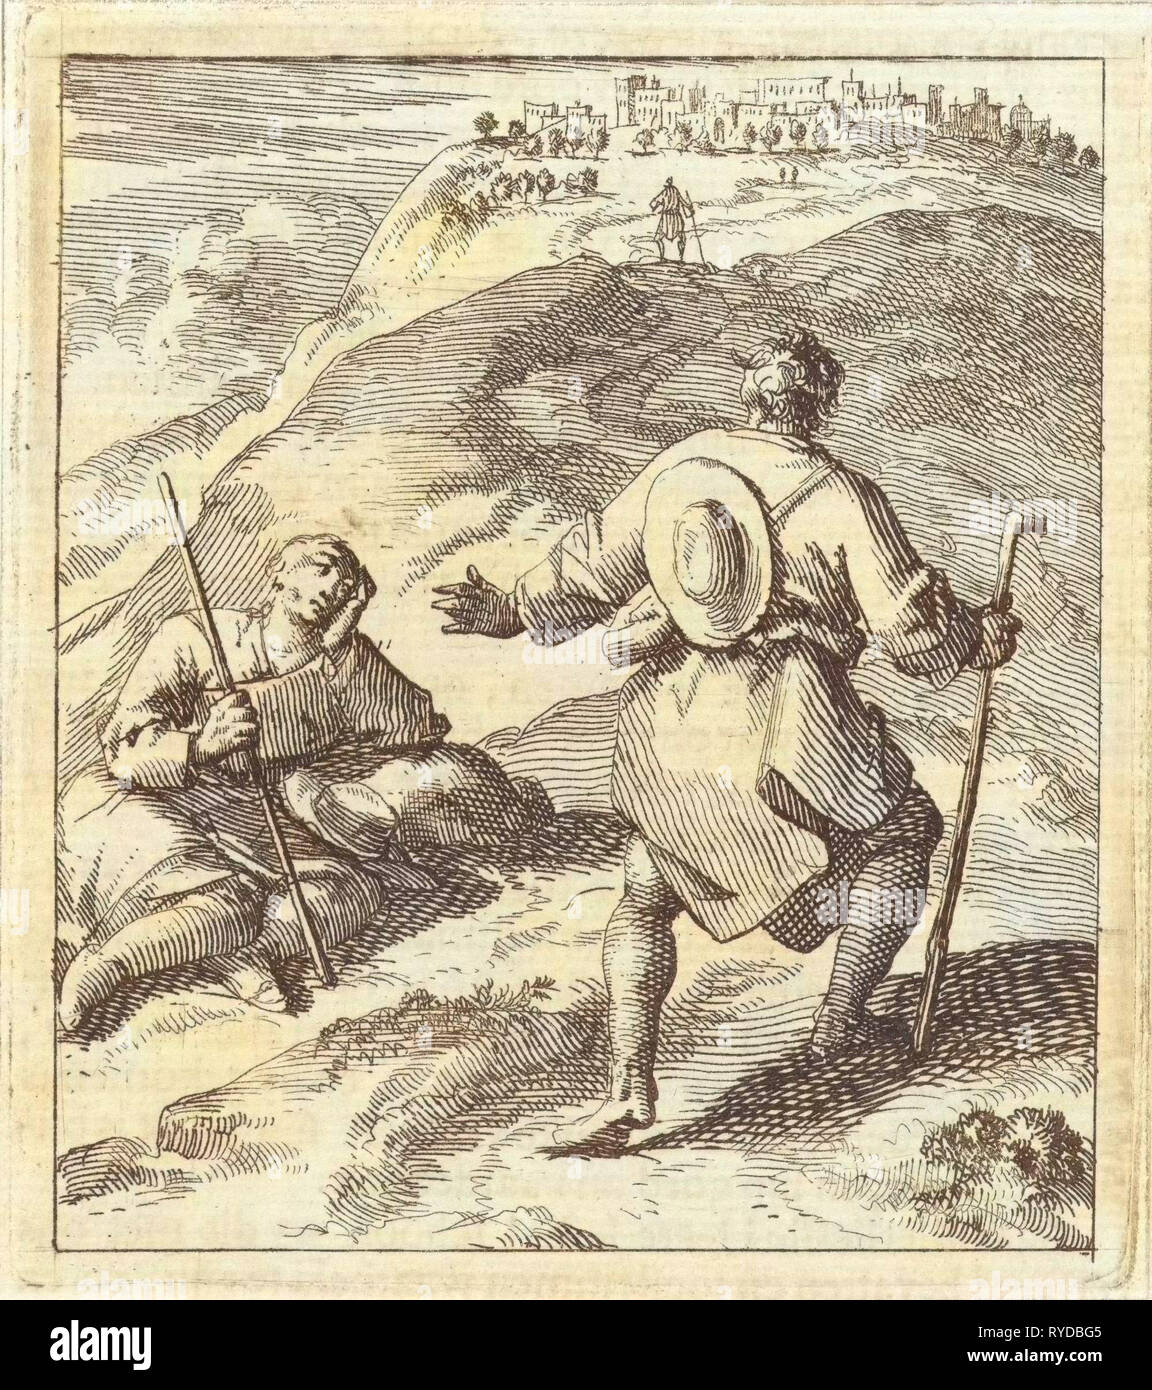 Pilgrim rencontre un autre pèlerin. Jan Luyken, mer. Pieter Arentsz (II), 1689 Banque D'Images